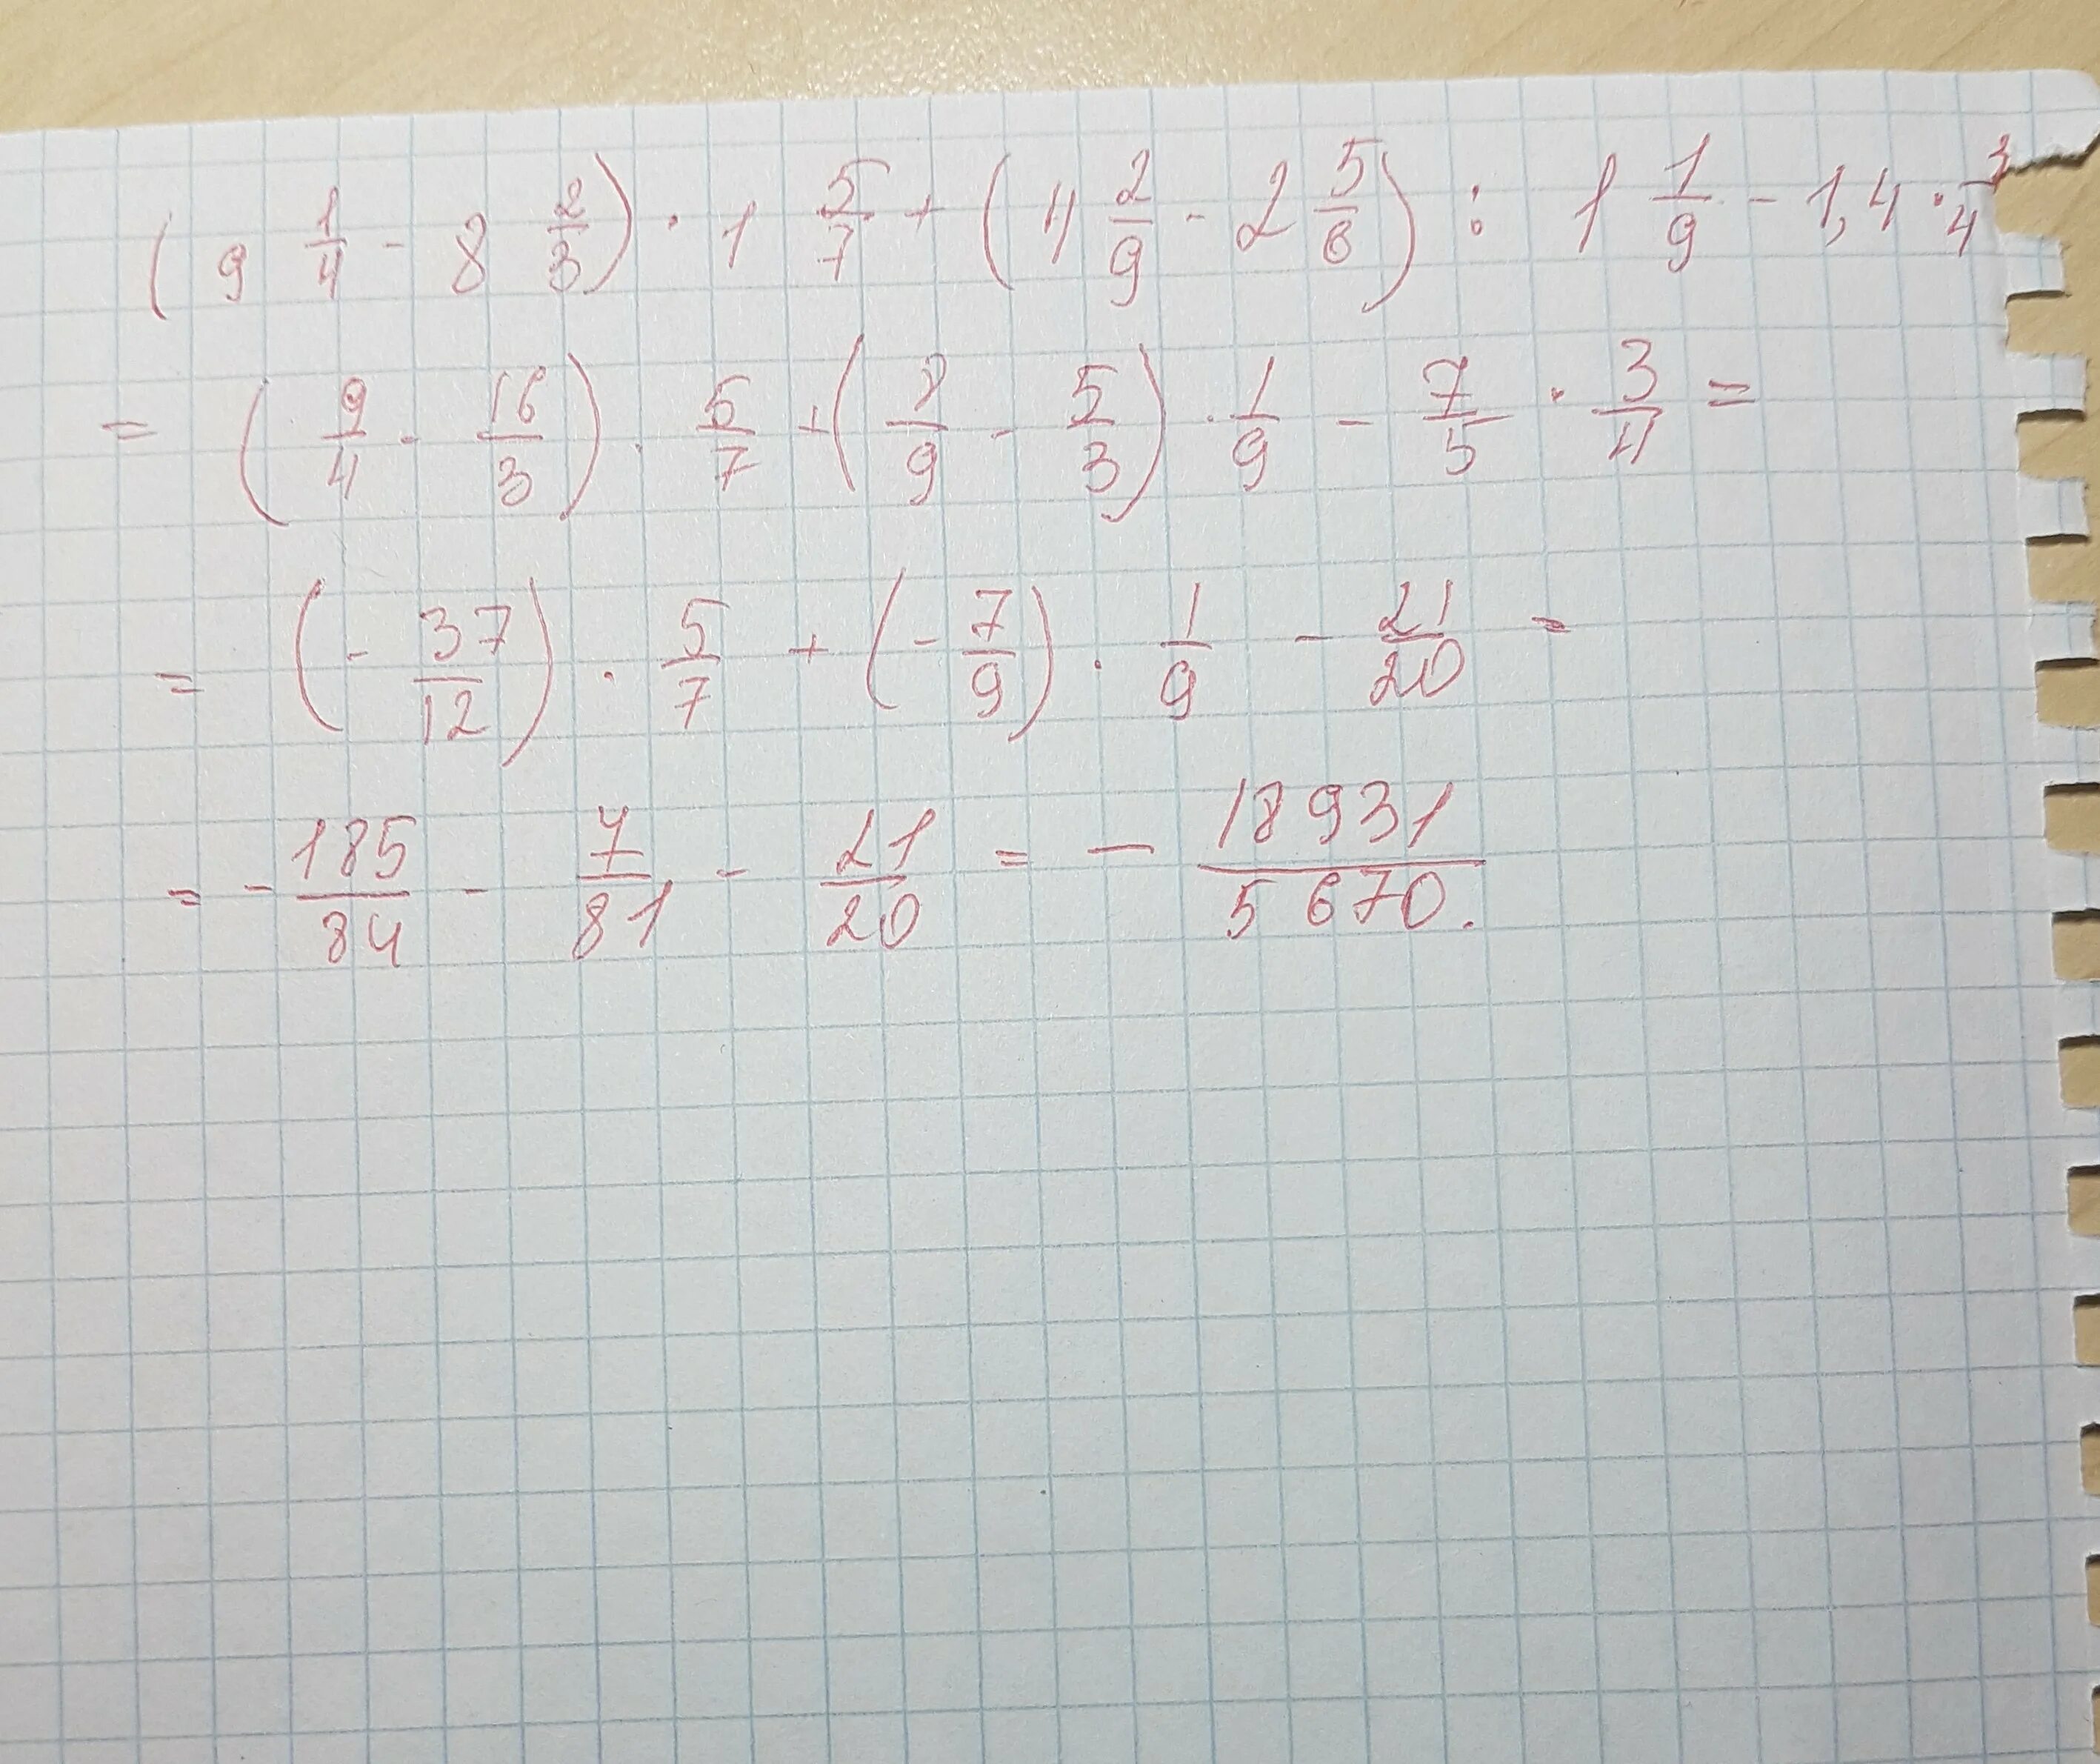 8 9 9 32 ответ. 9 1/4-8 2/3 1 5/7+ 4 2/9-2 5/6 1 1/9. (-1 5/9 *2 1/7+ 1 7/2)*1 1/7. Пример 1 4/9*9. -4,9 - 2,7+ 2,1- -3,2.